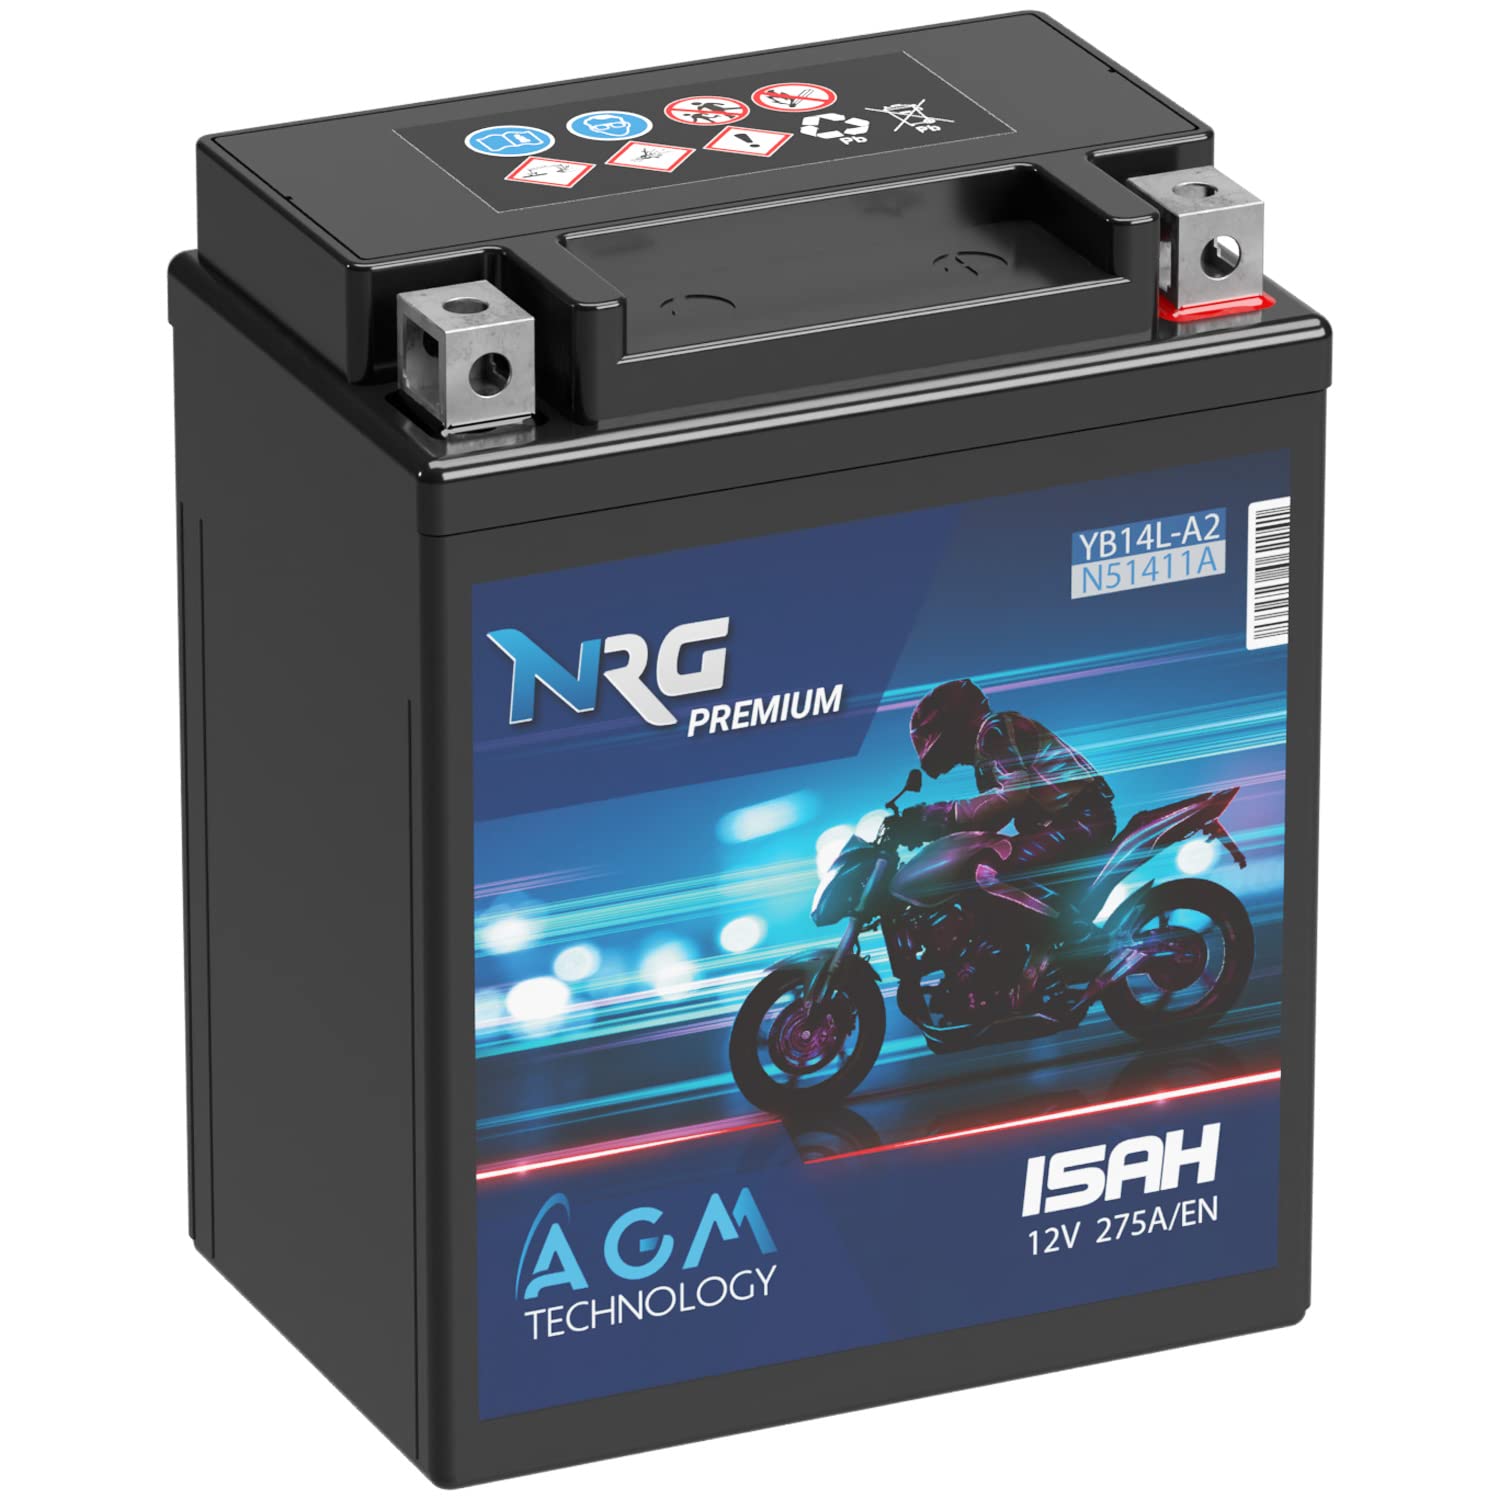 NRG Premium YB14L-A2 AGM Motorradbatterie 15Ah 12V 275A/EN Batterie 51411 12N14-3A FB14L-A2 auslaufsicher wartungsfrei ersetzt 14Ah von NRG PREMIUM